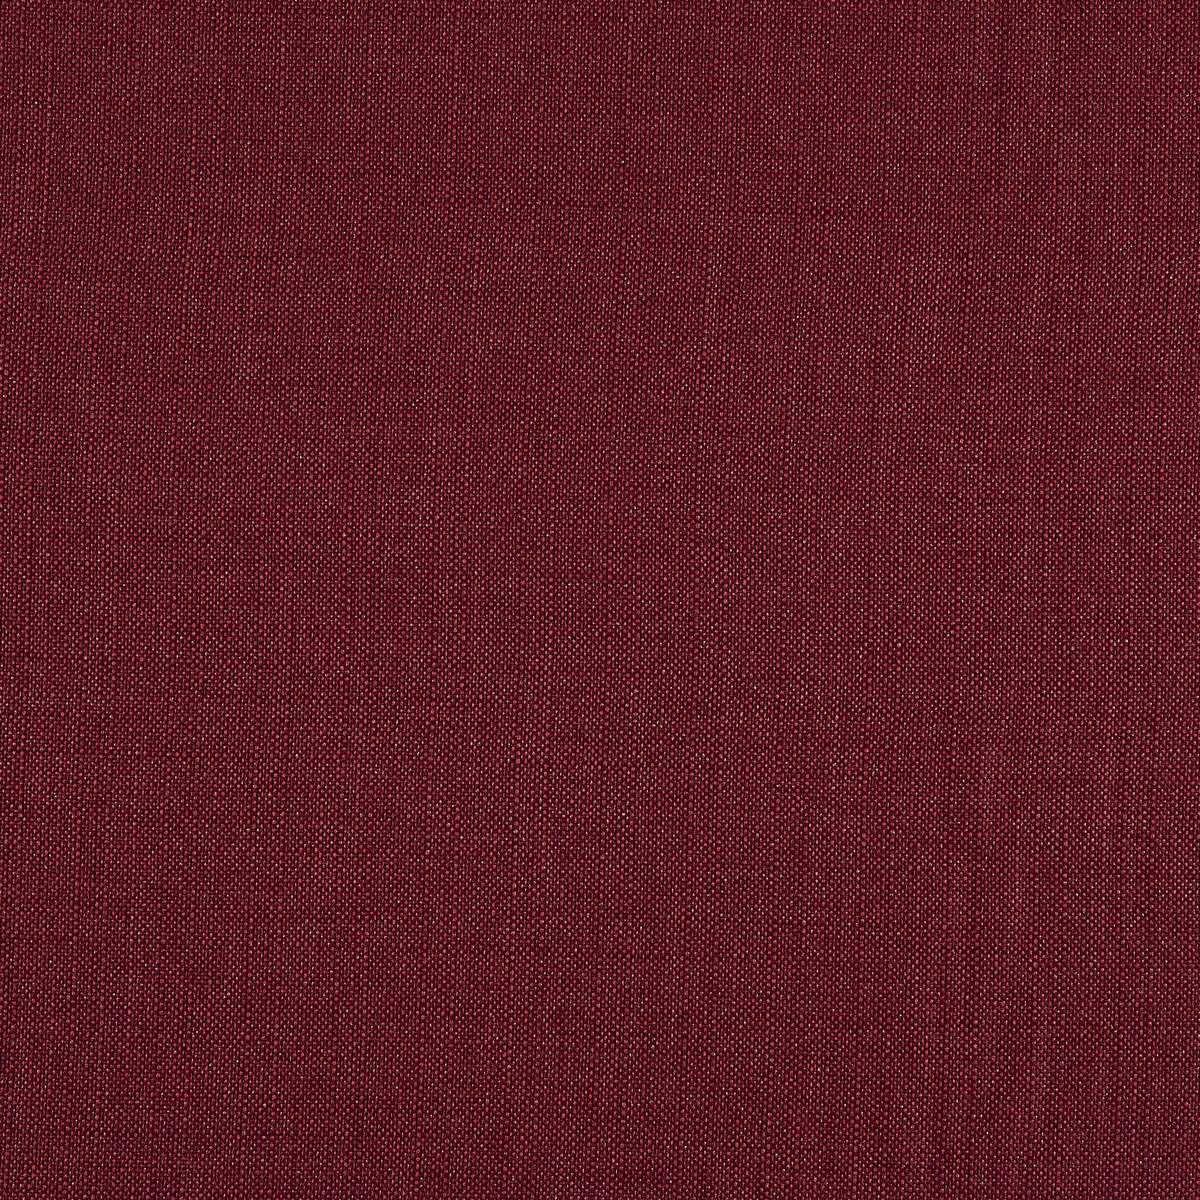 Grosvenor Ruby Fabric by Prestigious Textiles